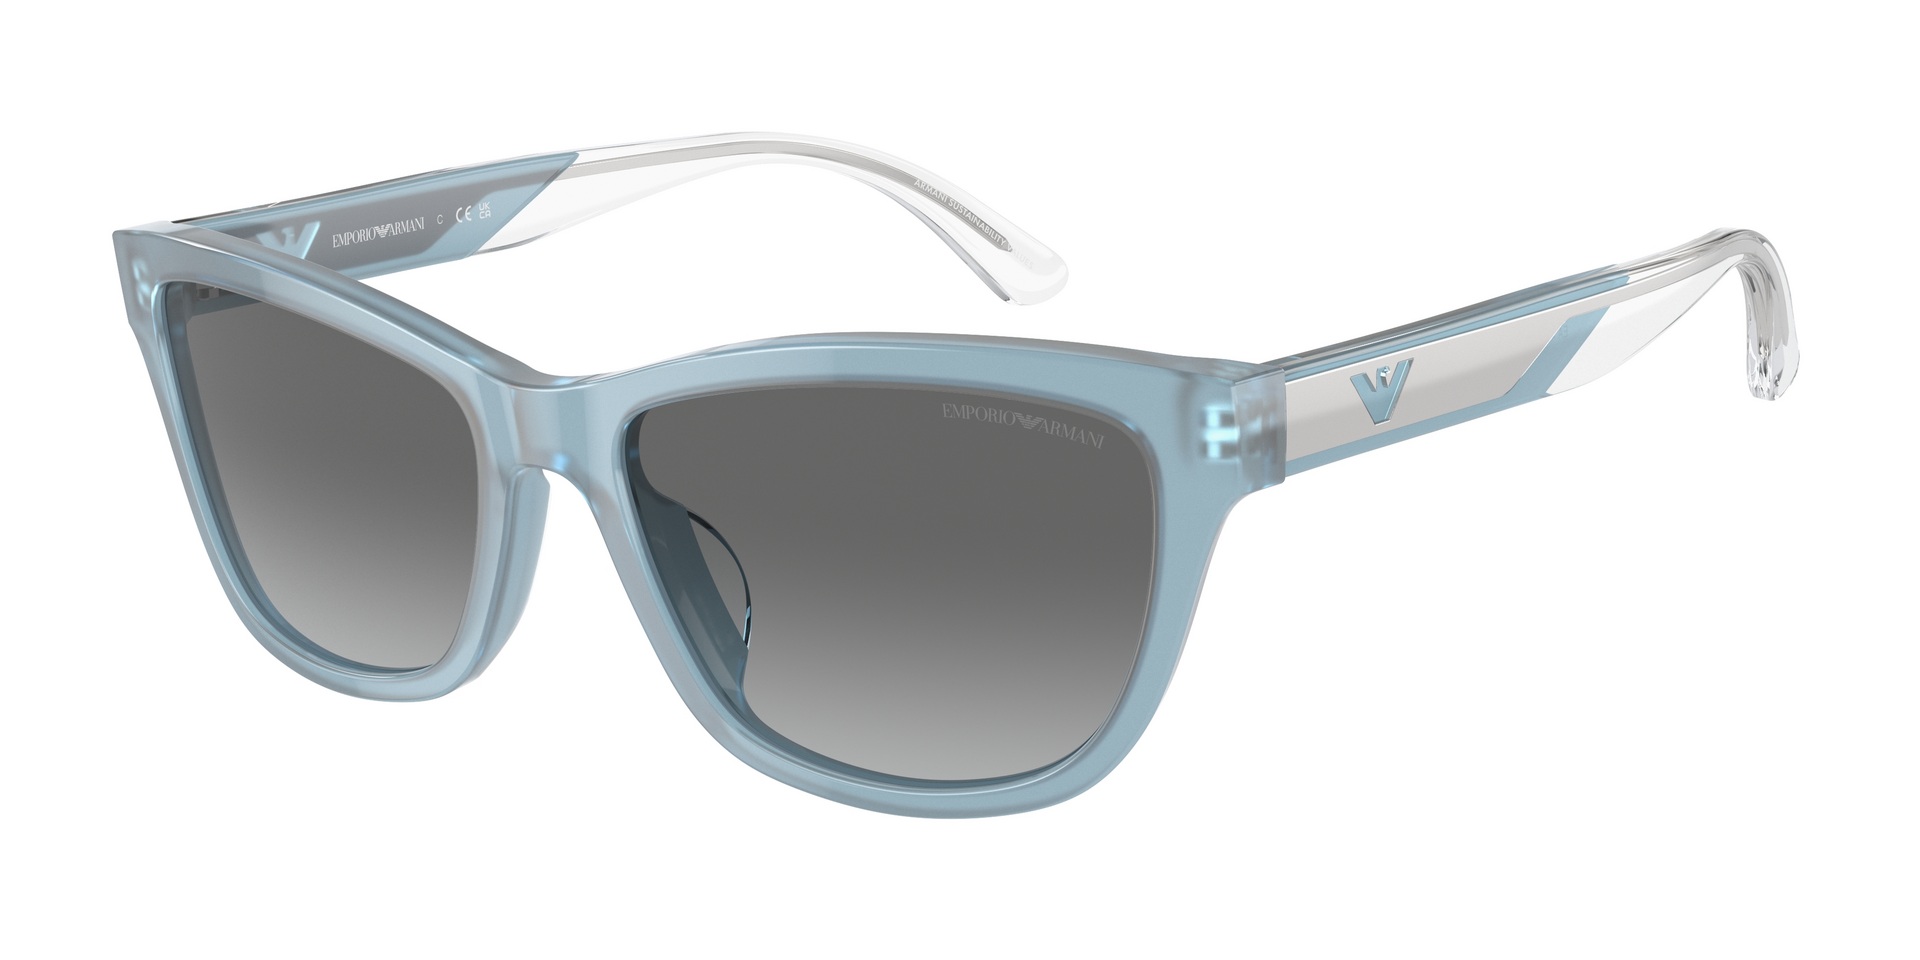 Das Bild zeigt die Sonnenbrille EA4227U 609611 von der Marke Emporio Armani in azurblau.